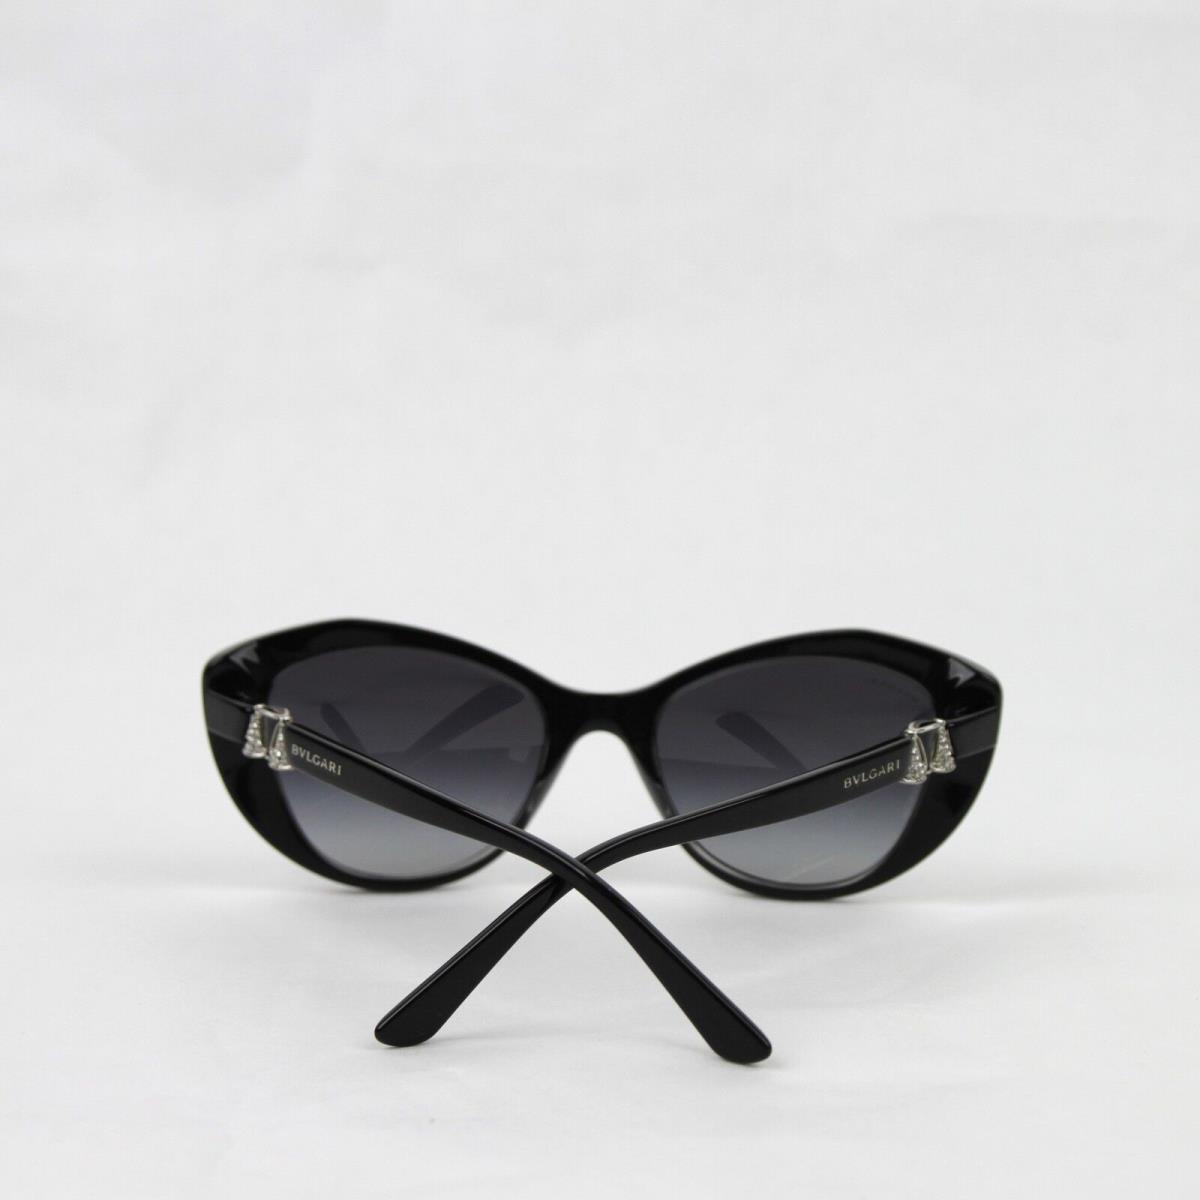 Bvlgari sunglasses  - Black Frame, Gray Lens 3